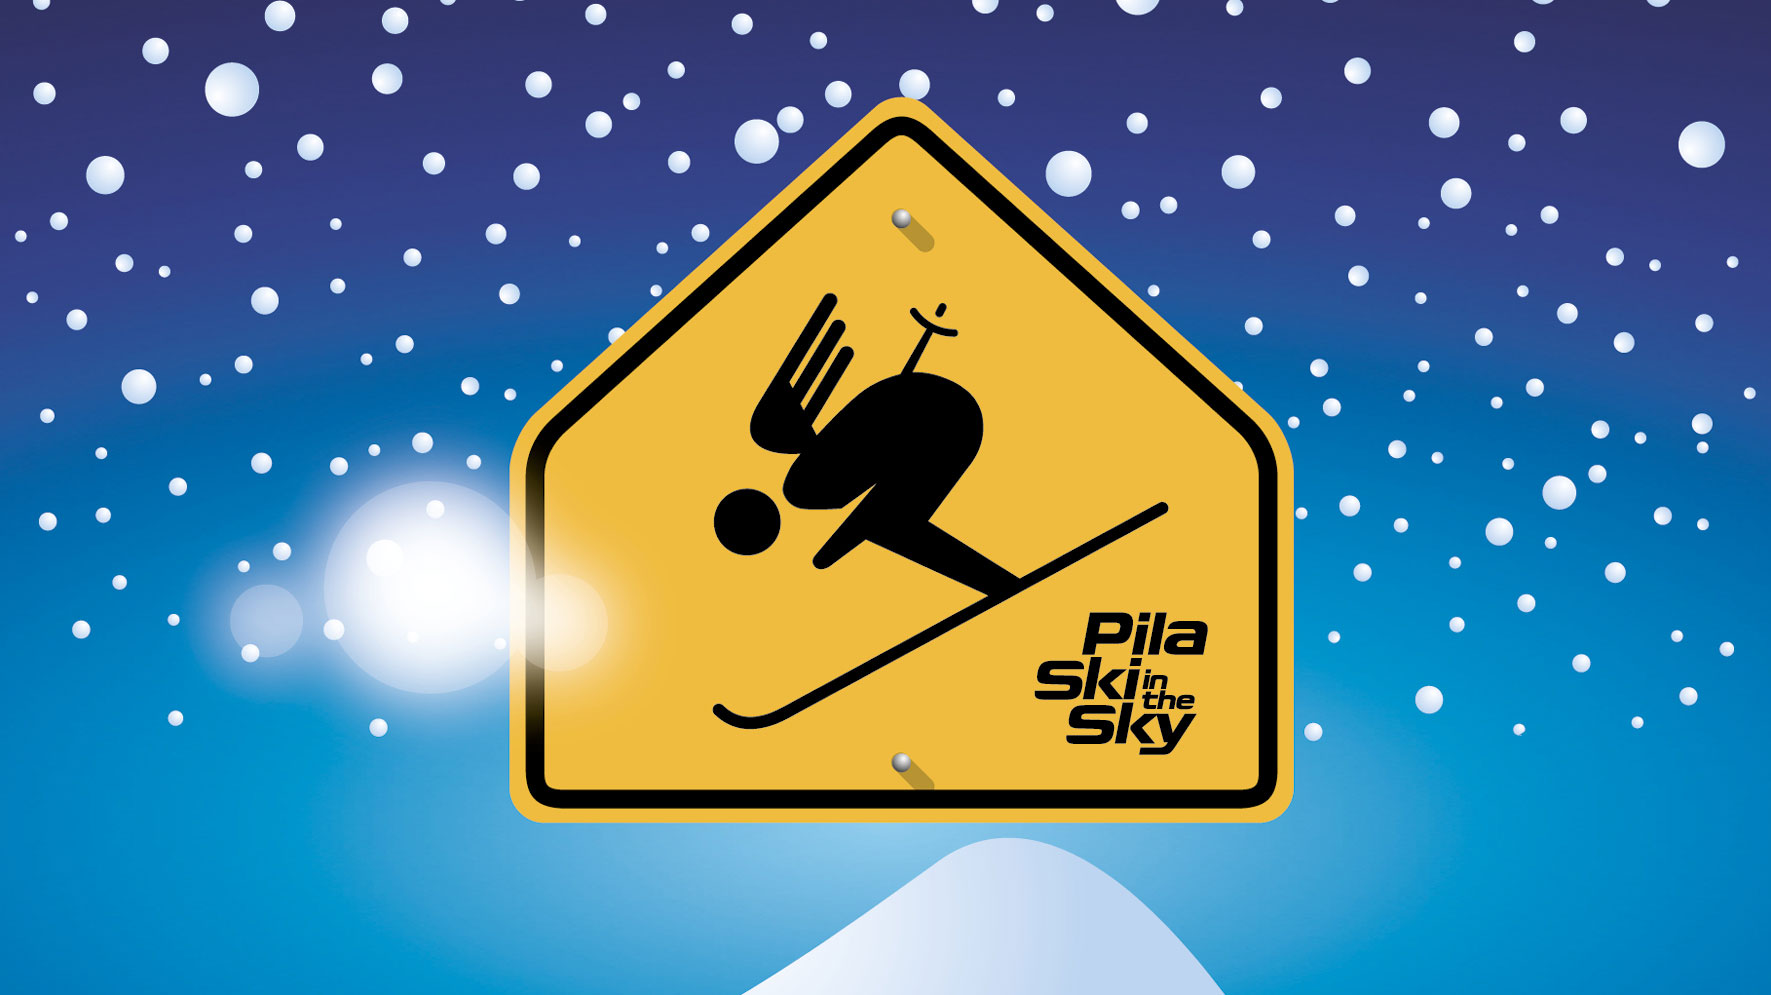 Pila. Ski in the Sky